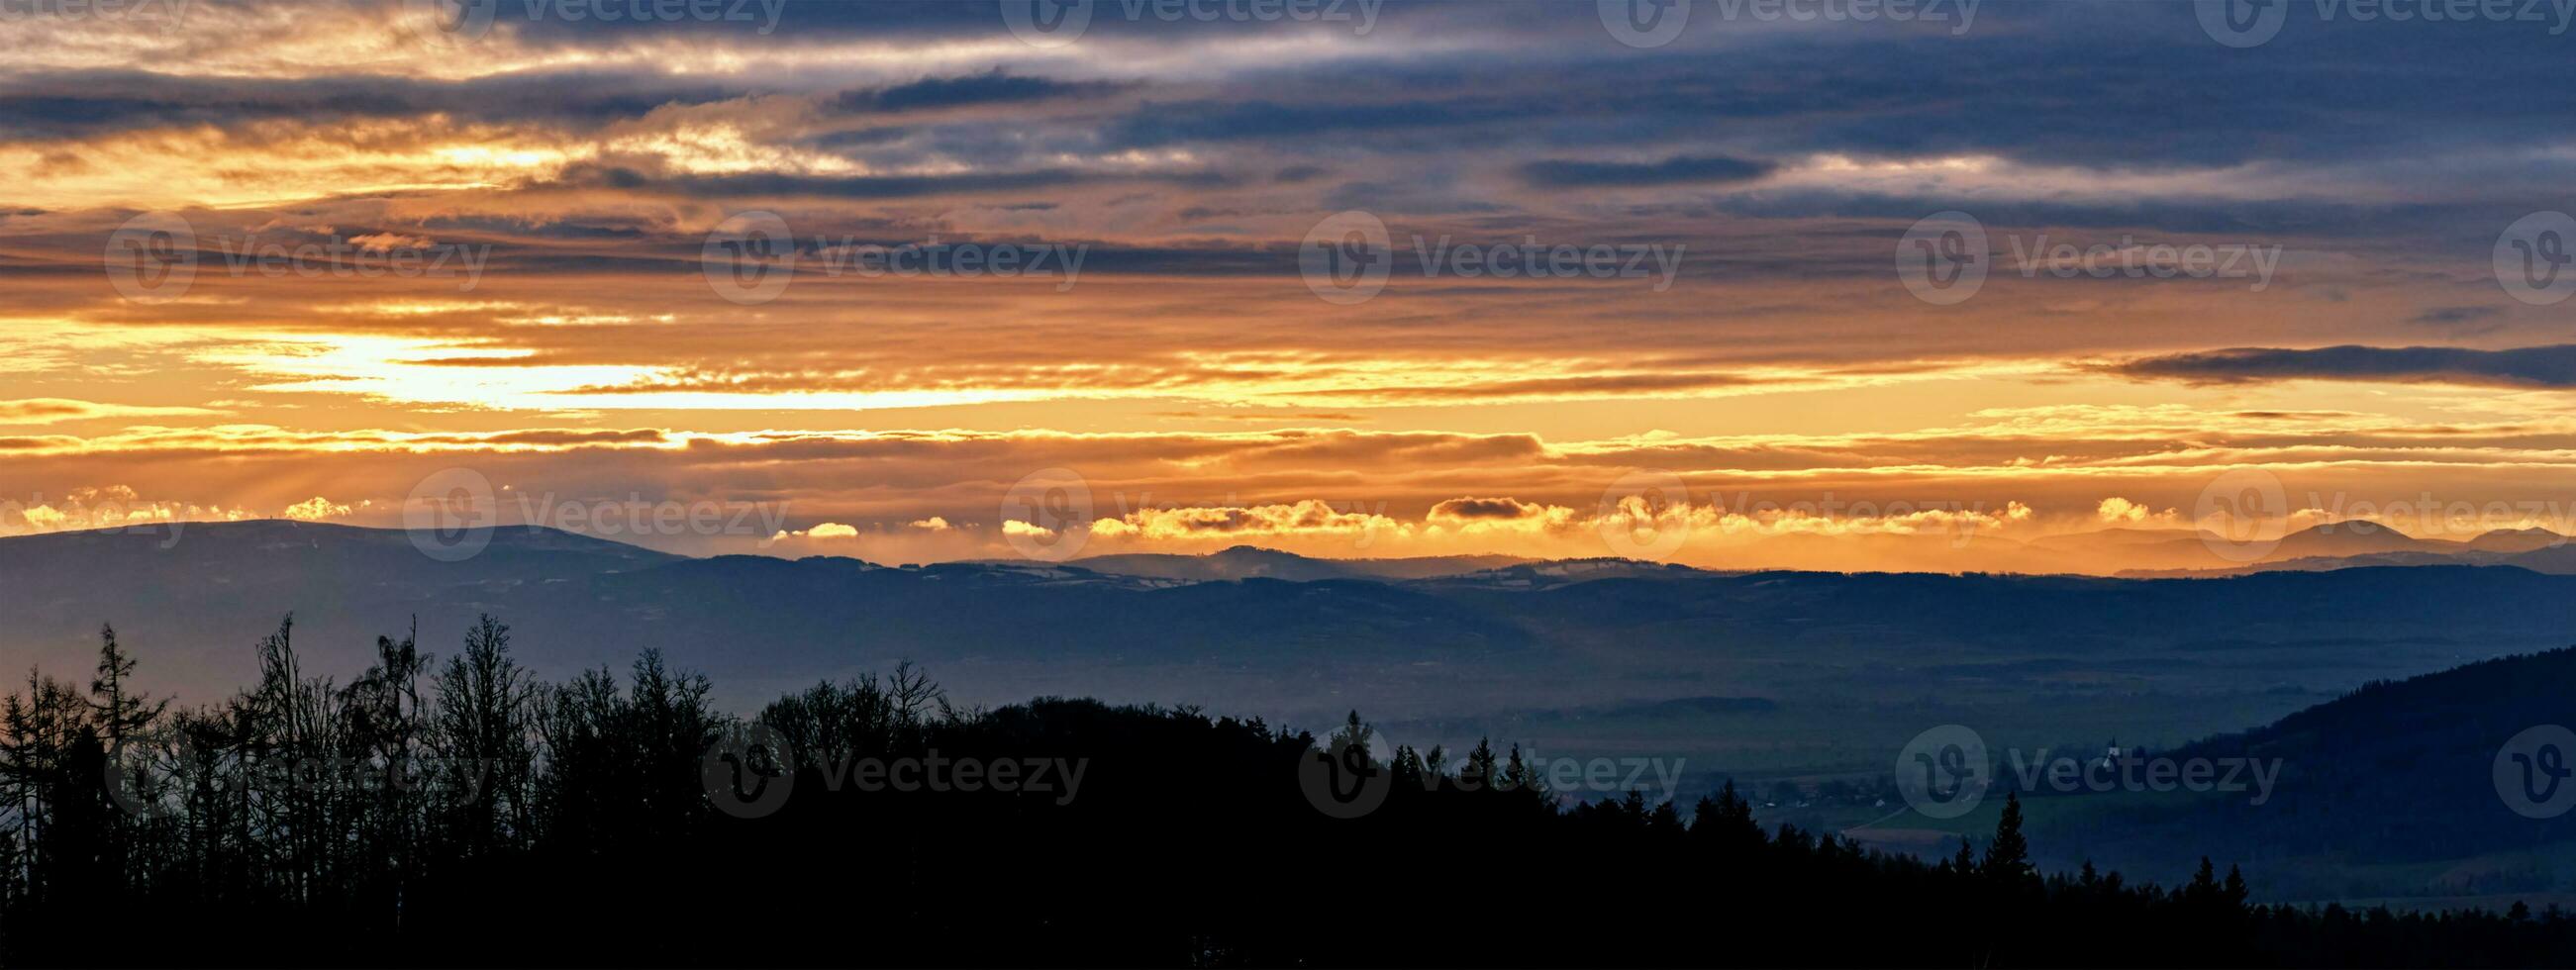 solnedgång dramatisk himmel över bergen form foto